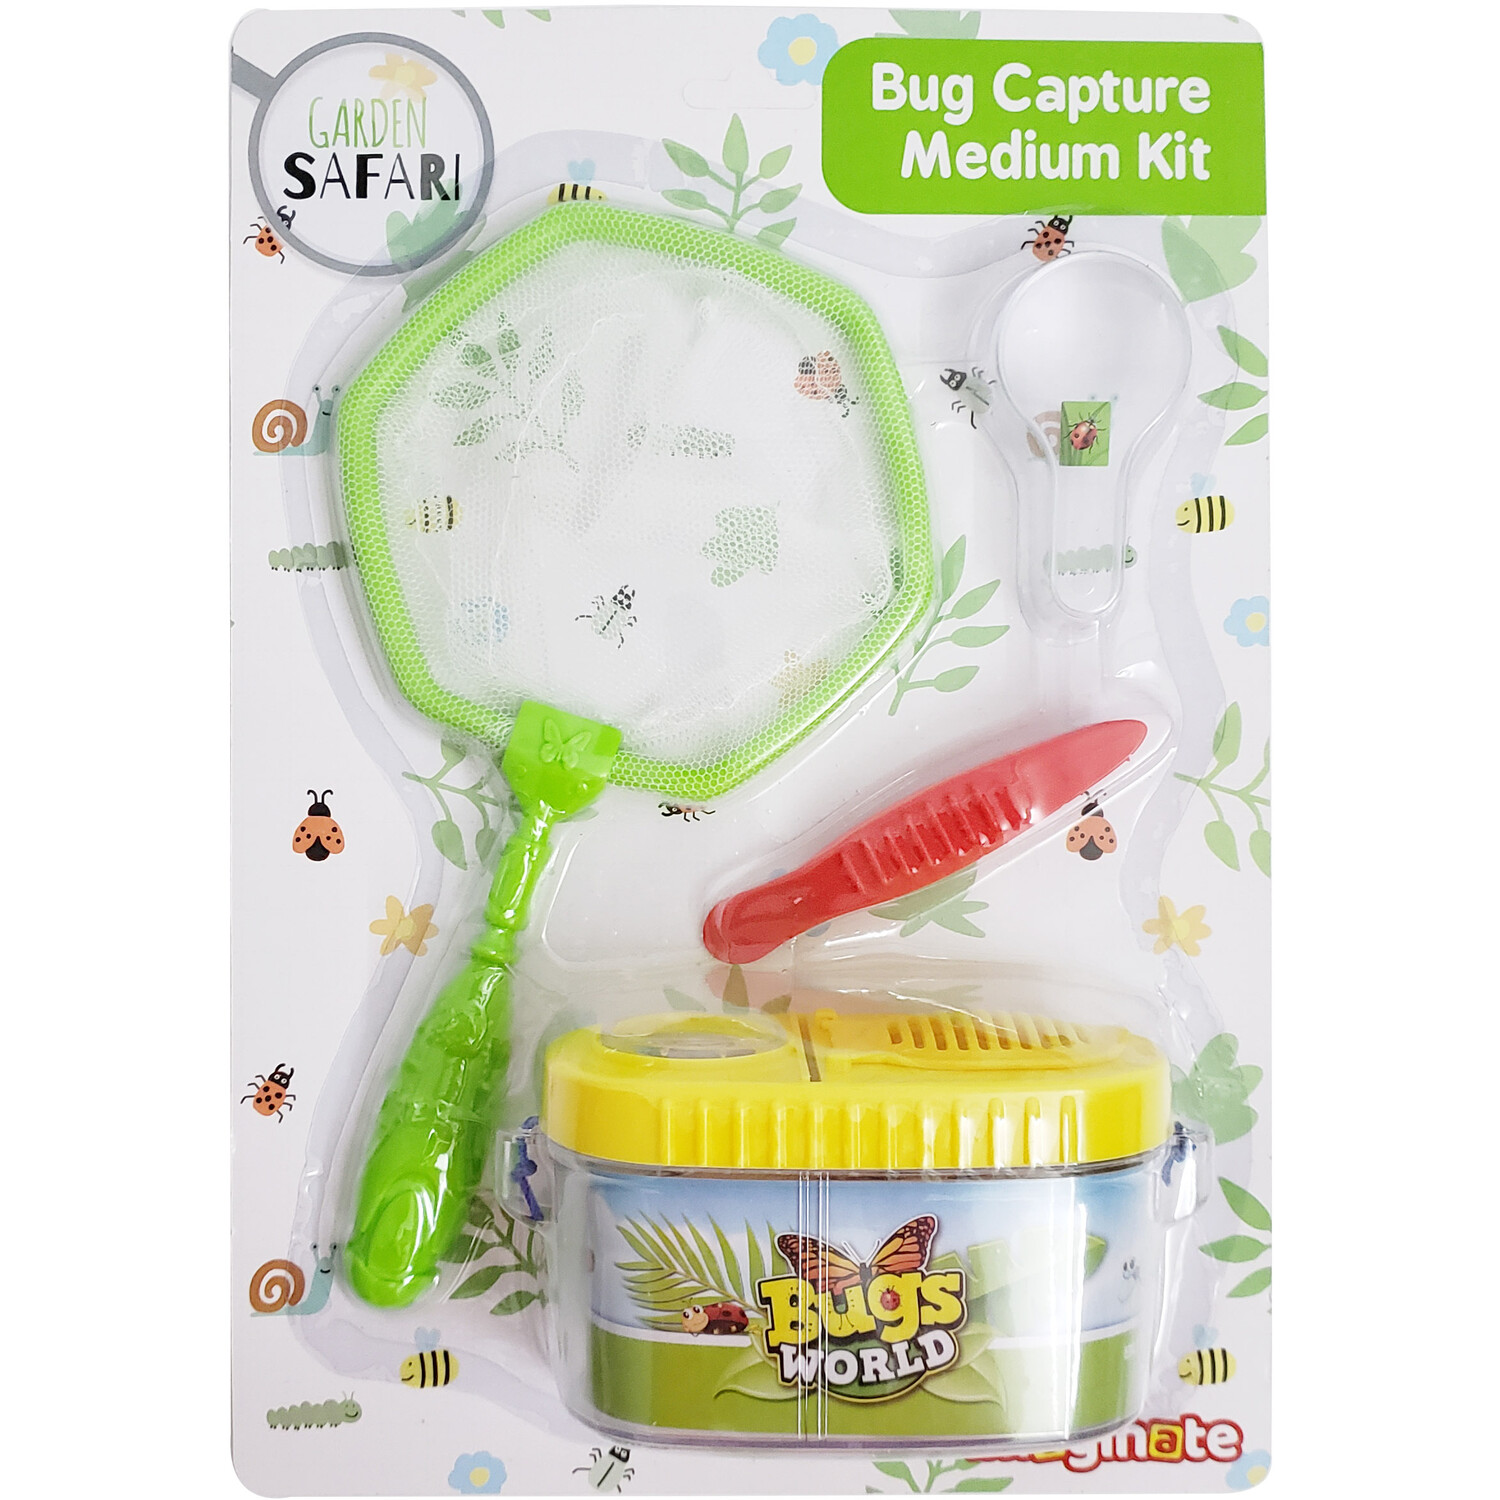 Bug Capture Kit - Medium Image